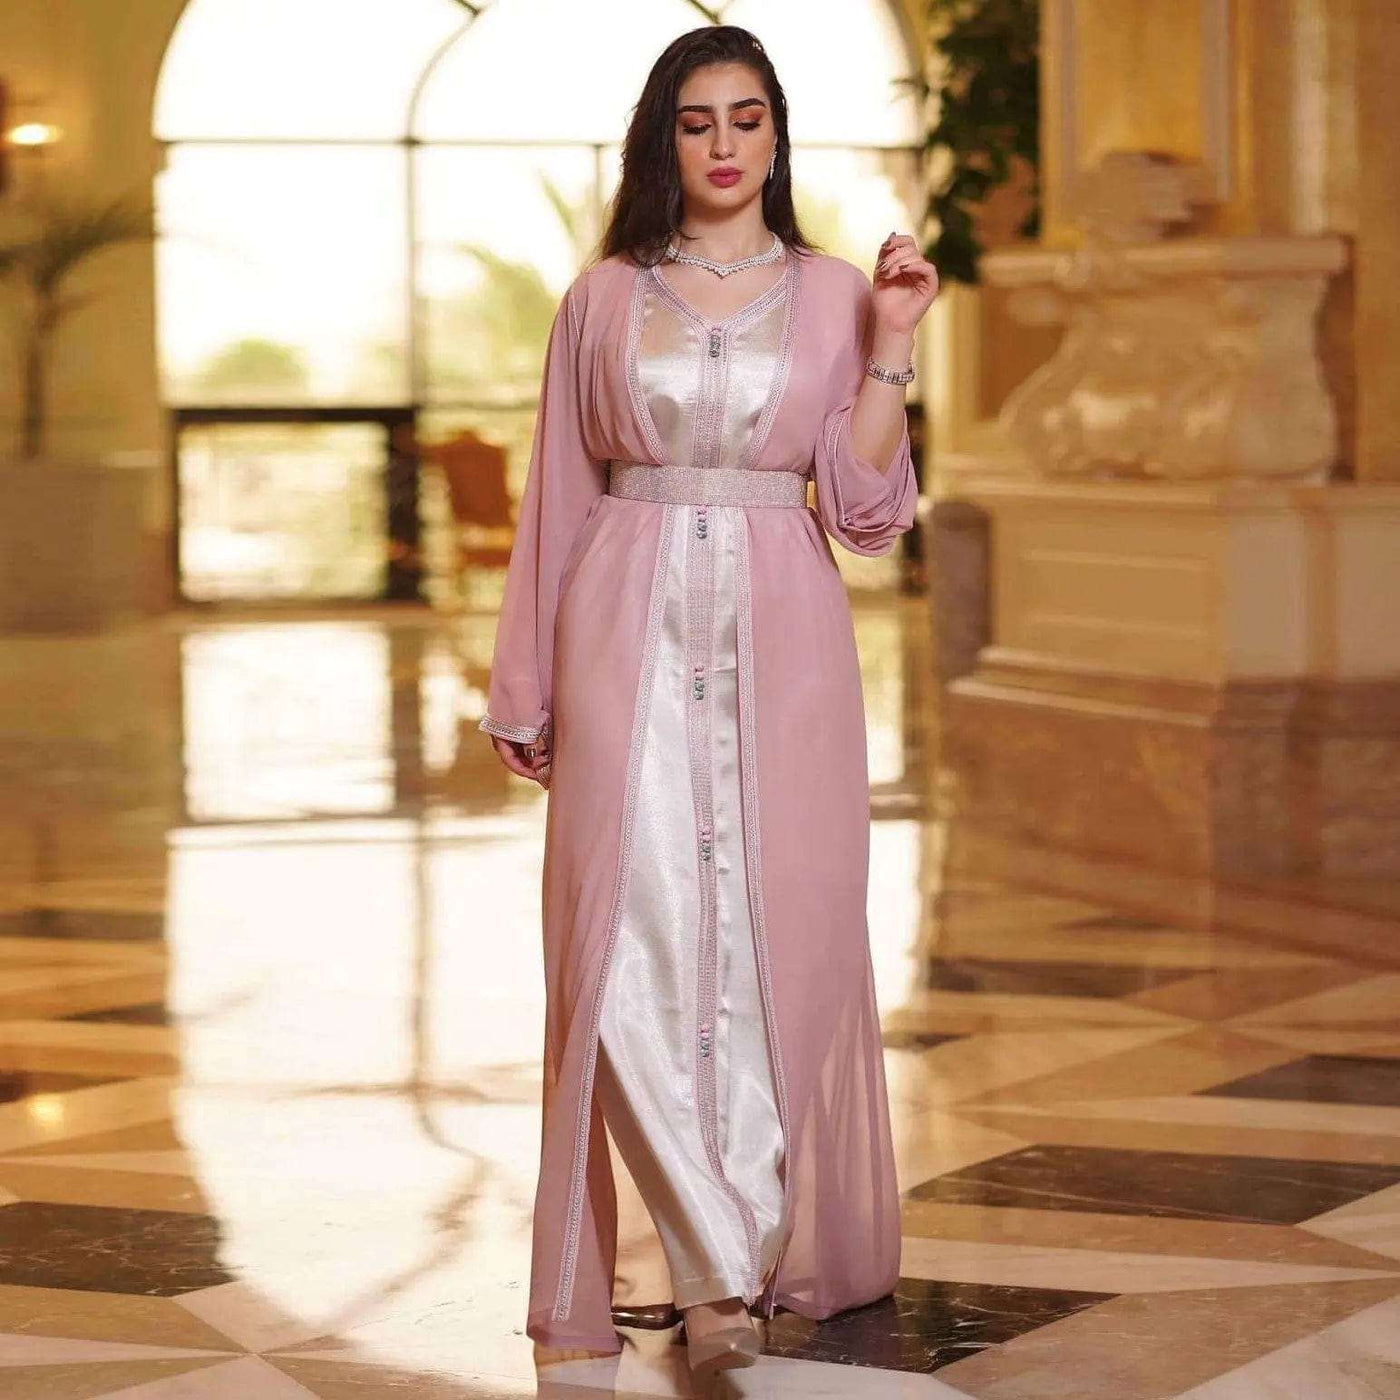 a woman wearing the pink chiffon arabian women's dress full length view